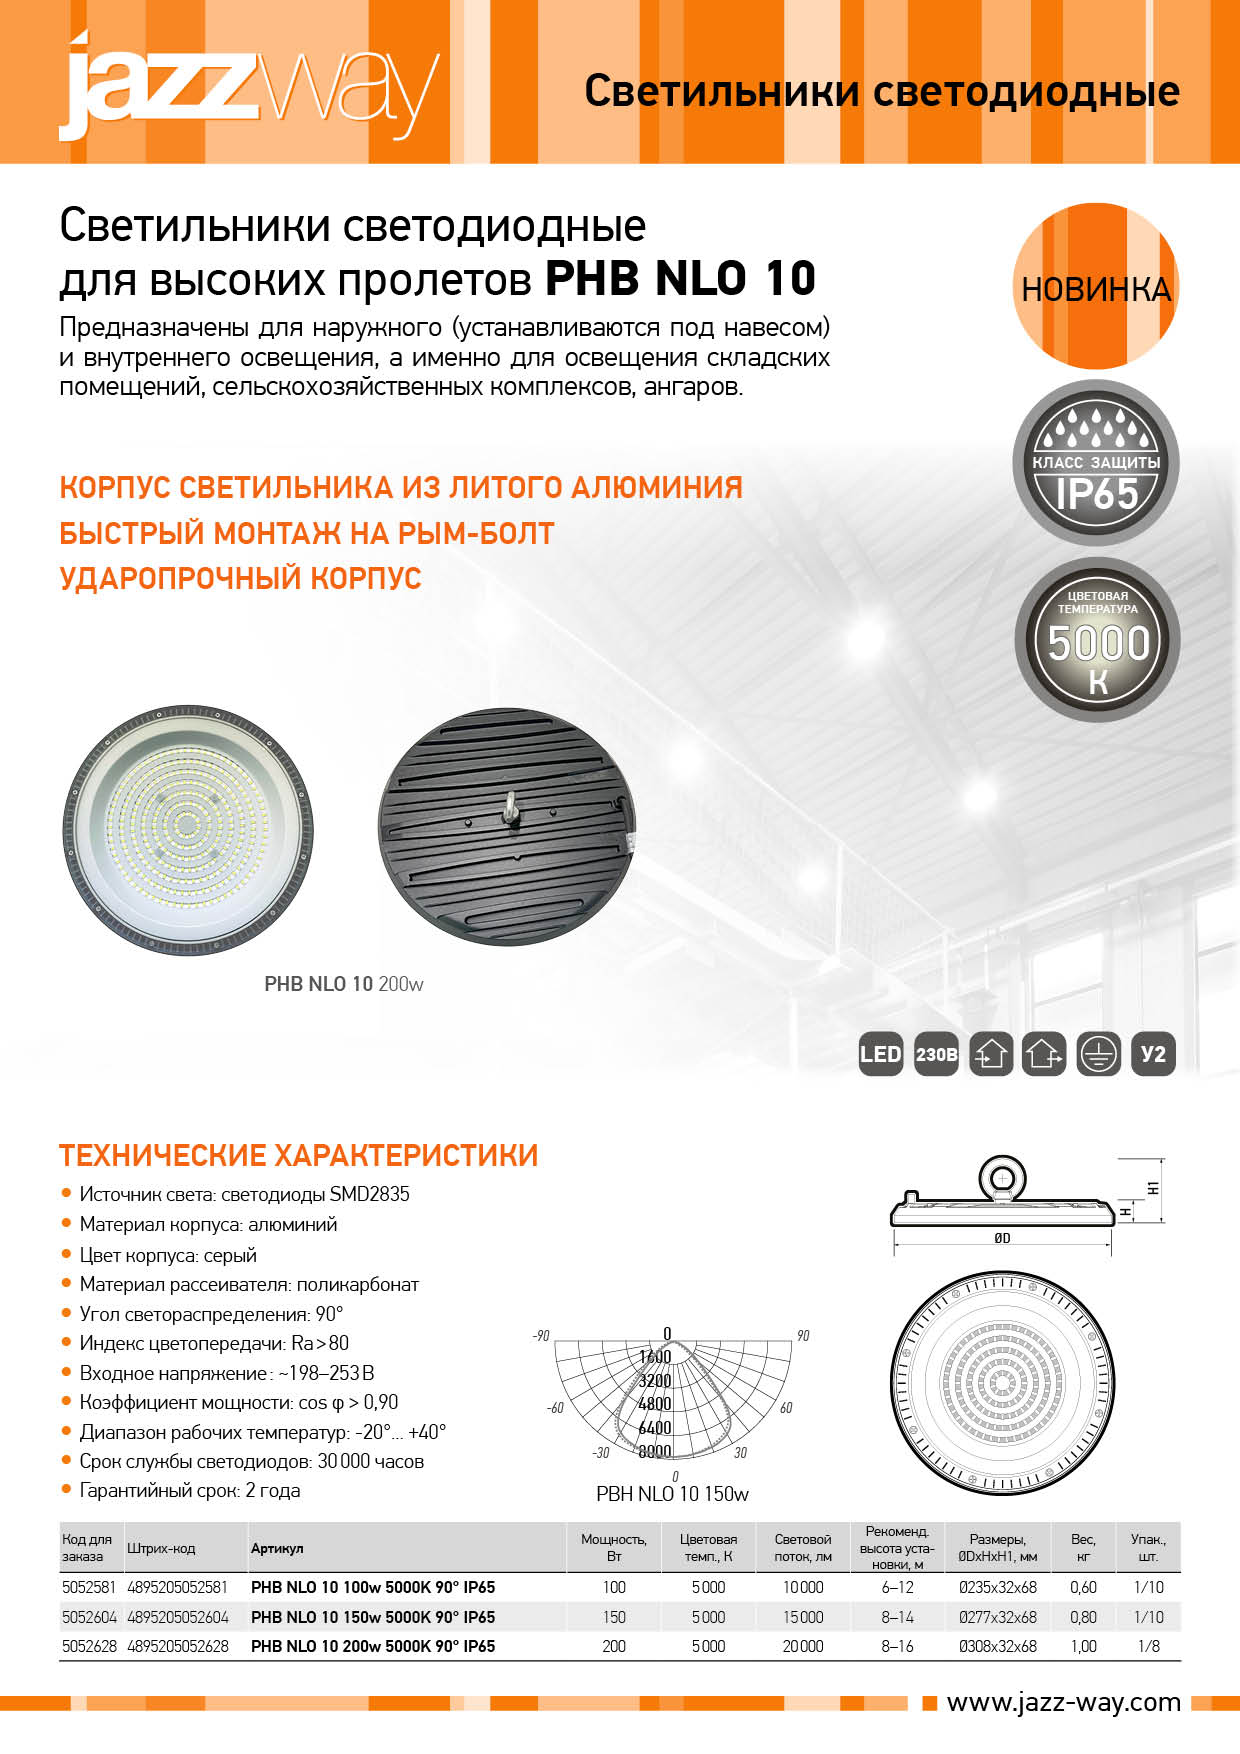 Светильник светодиодный для высоких пролетов PHB NLO 10